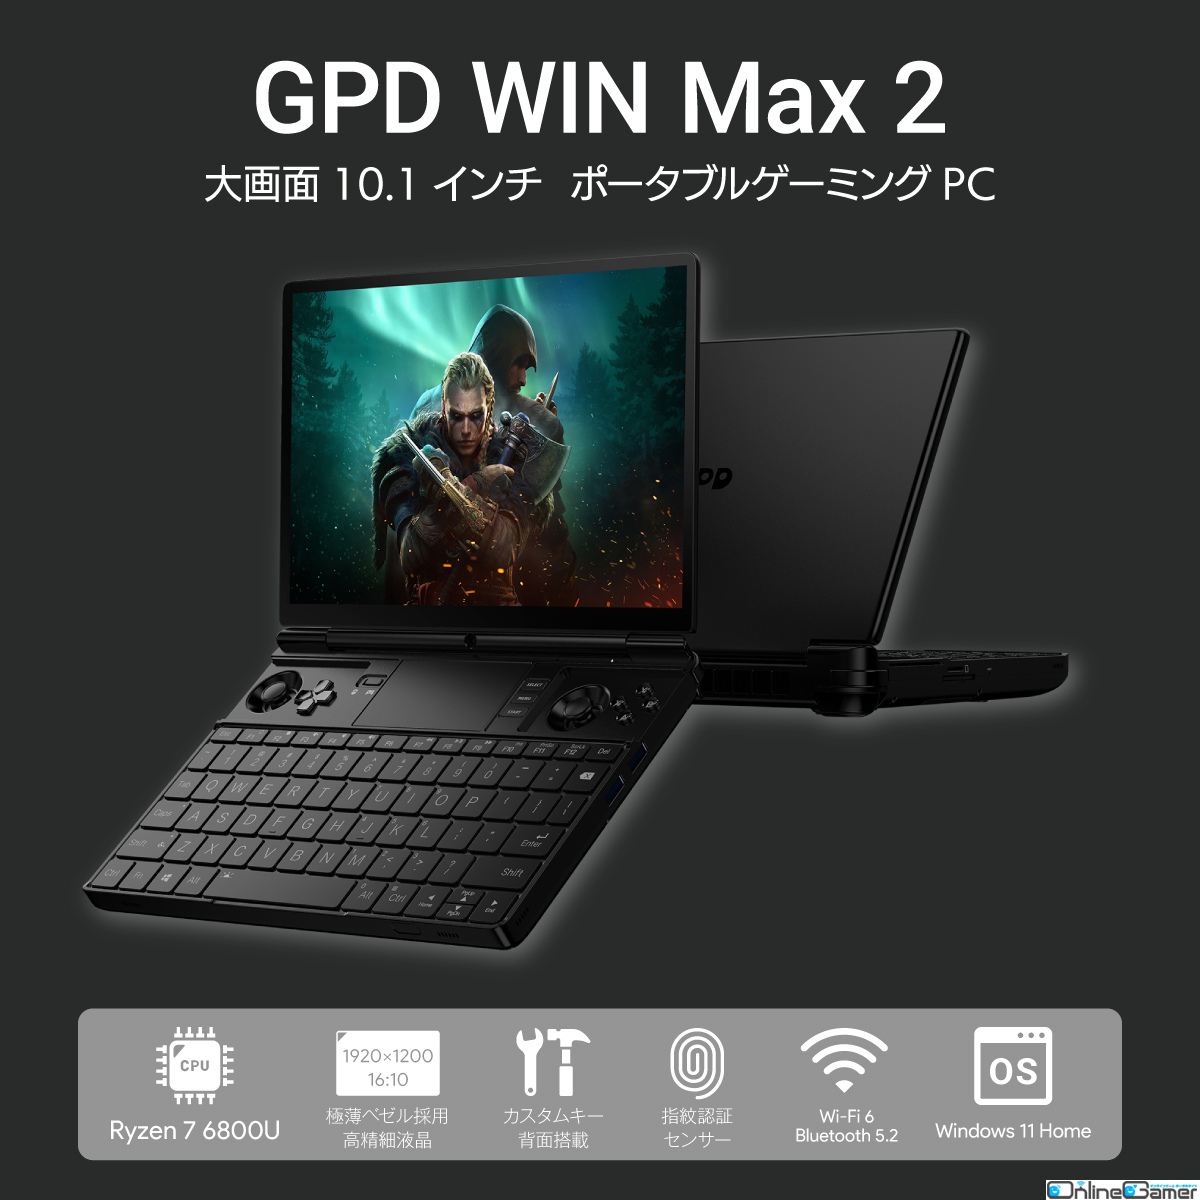 AMD Ryzen 7 6800Uやジョイスティックを搭載したポータブルゲーミングPC「GPD WIN Max 2」の予約受付が開始の画像